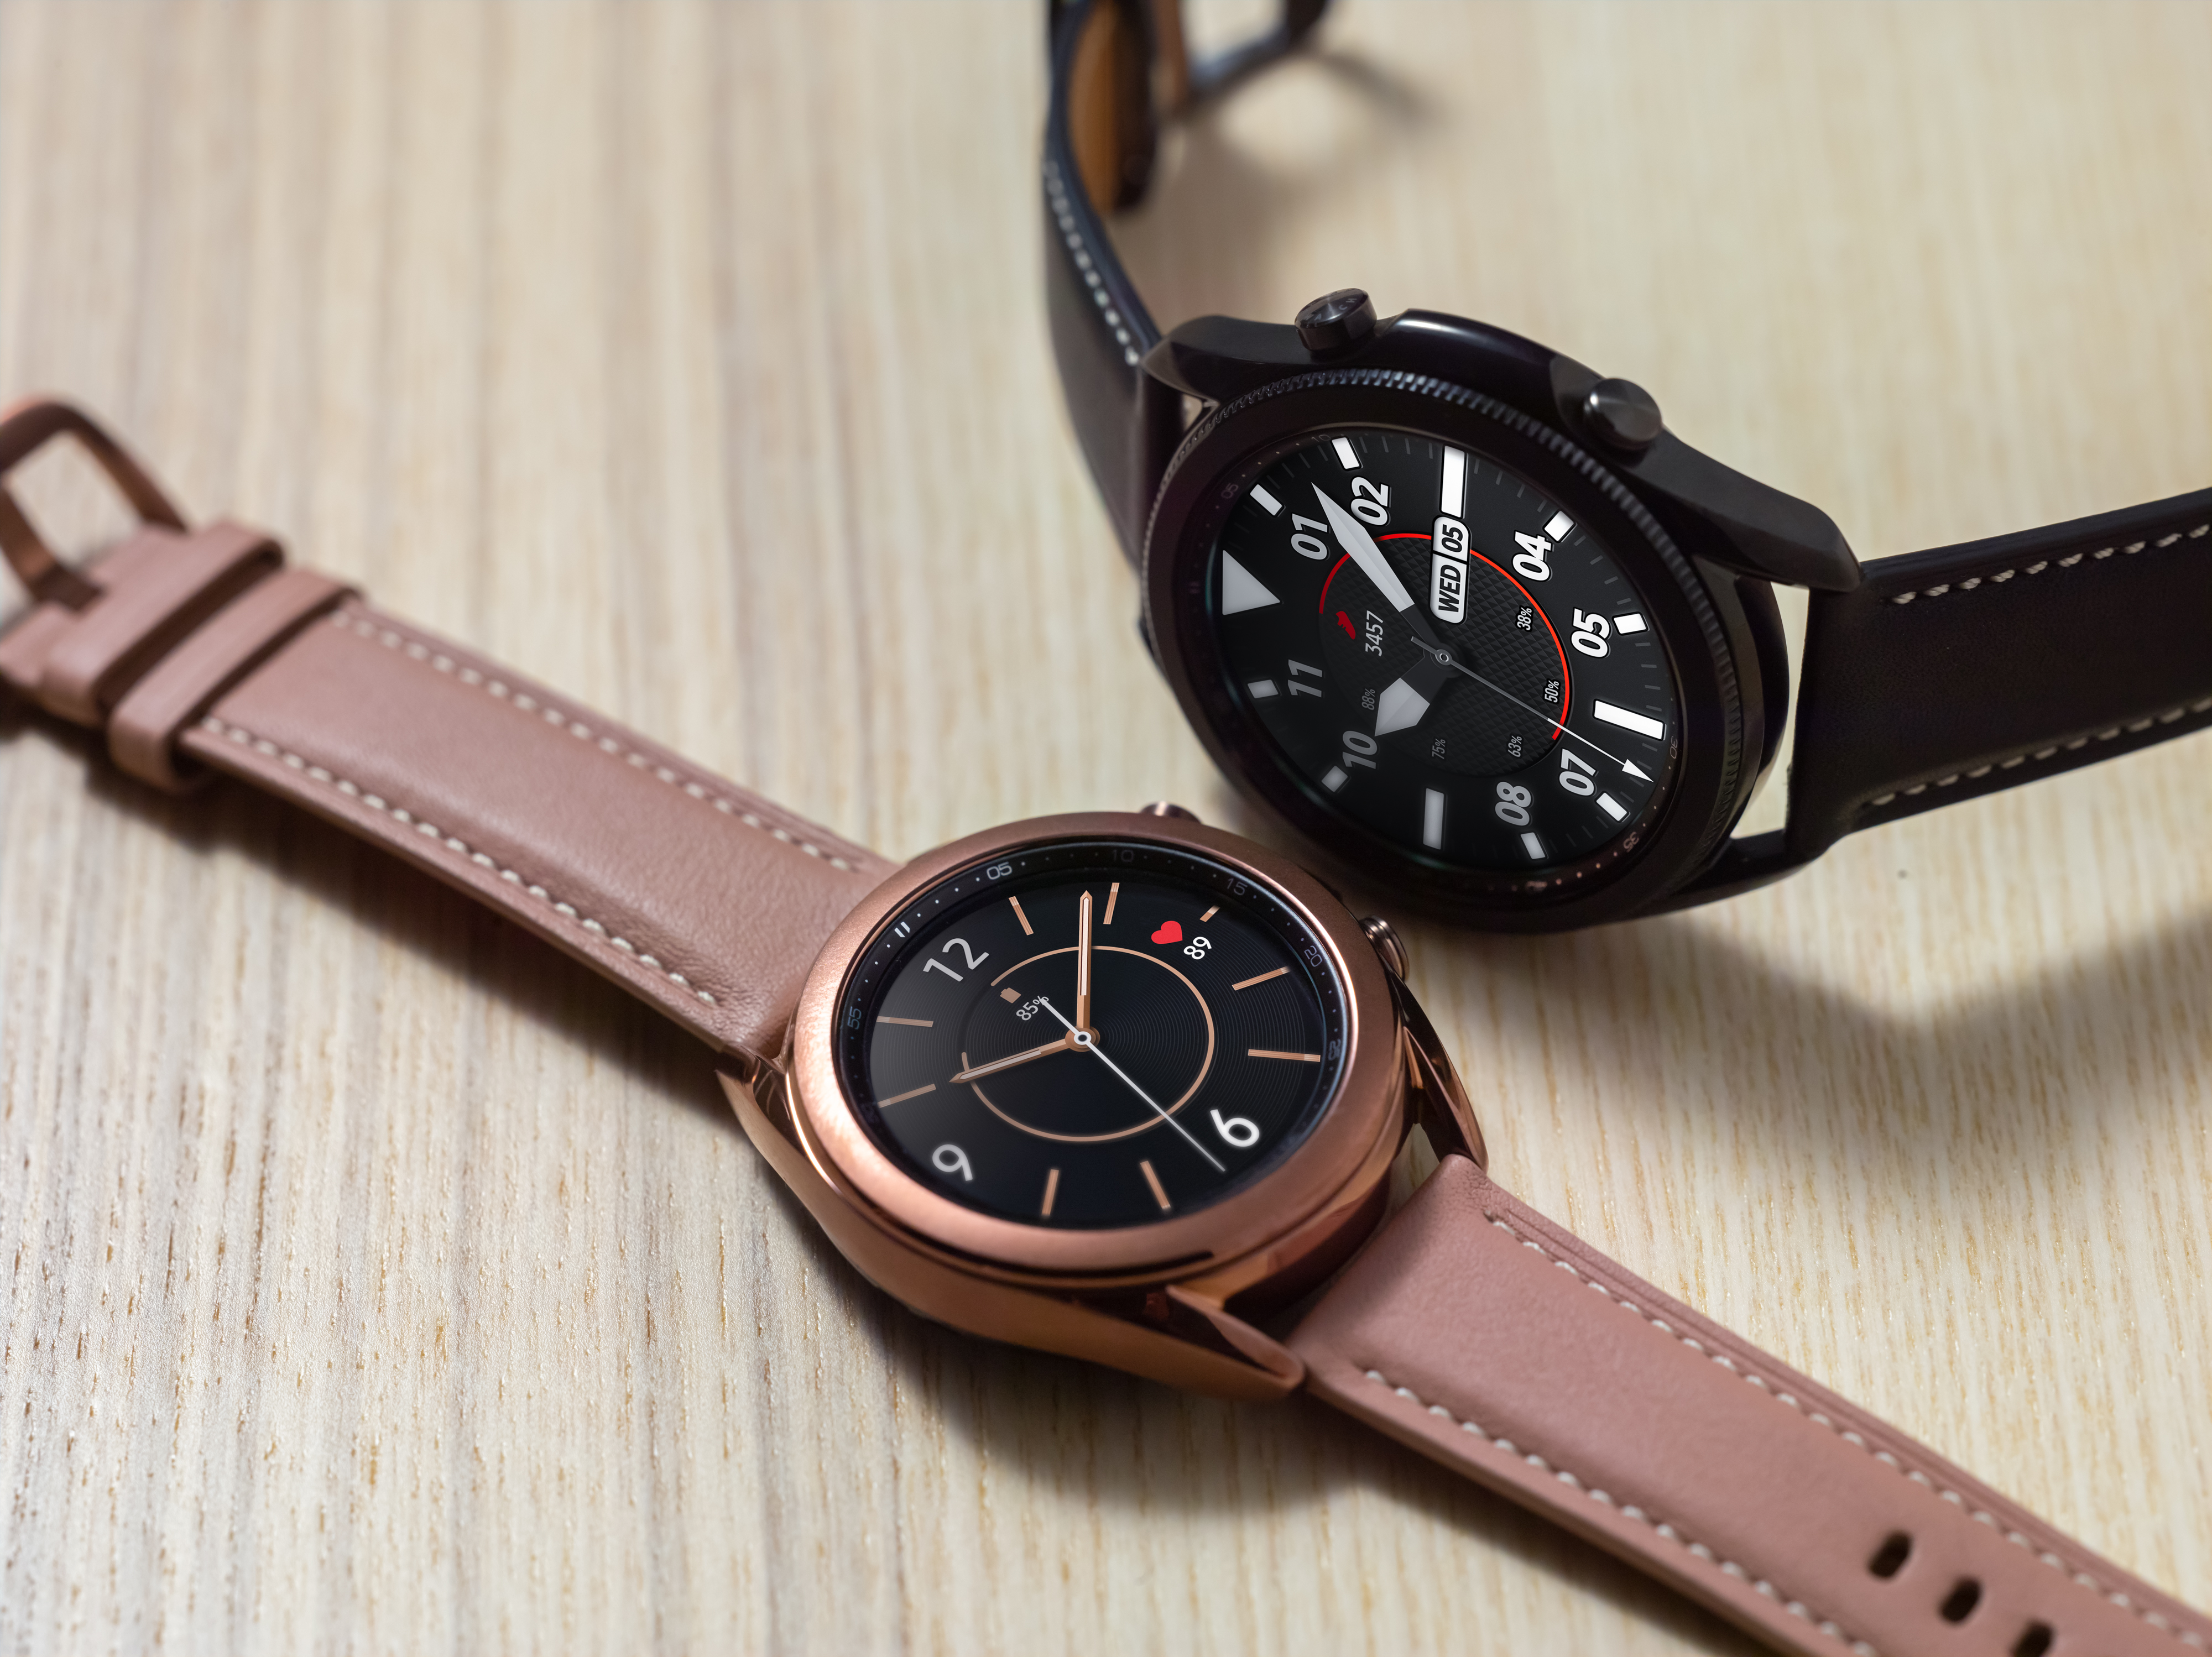 The bezel is back for Samsungâs Galaxy Watch 3 â TechCrunch